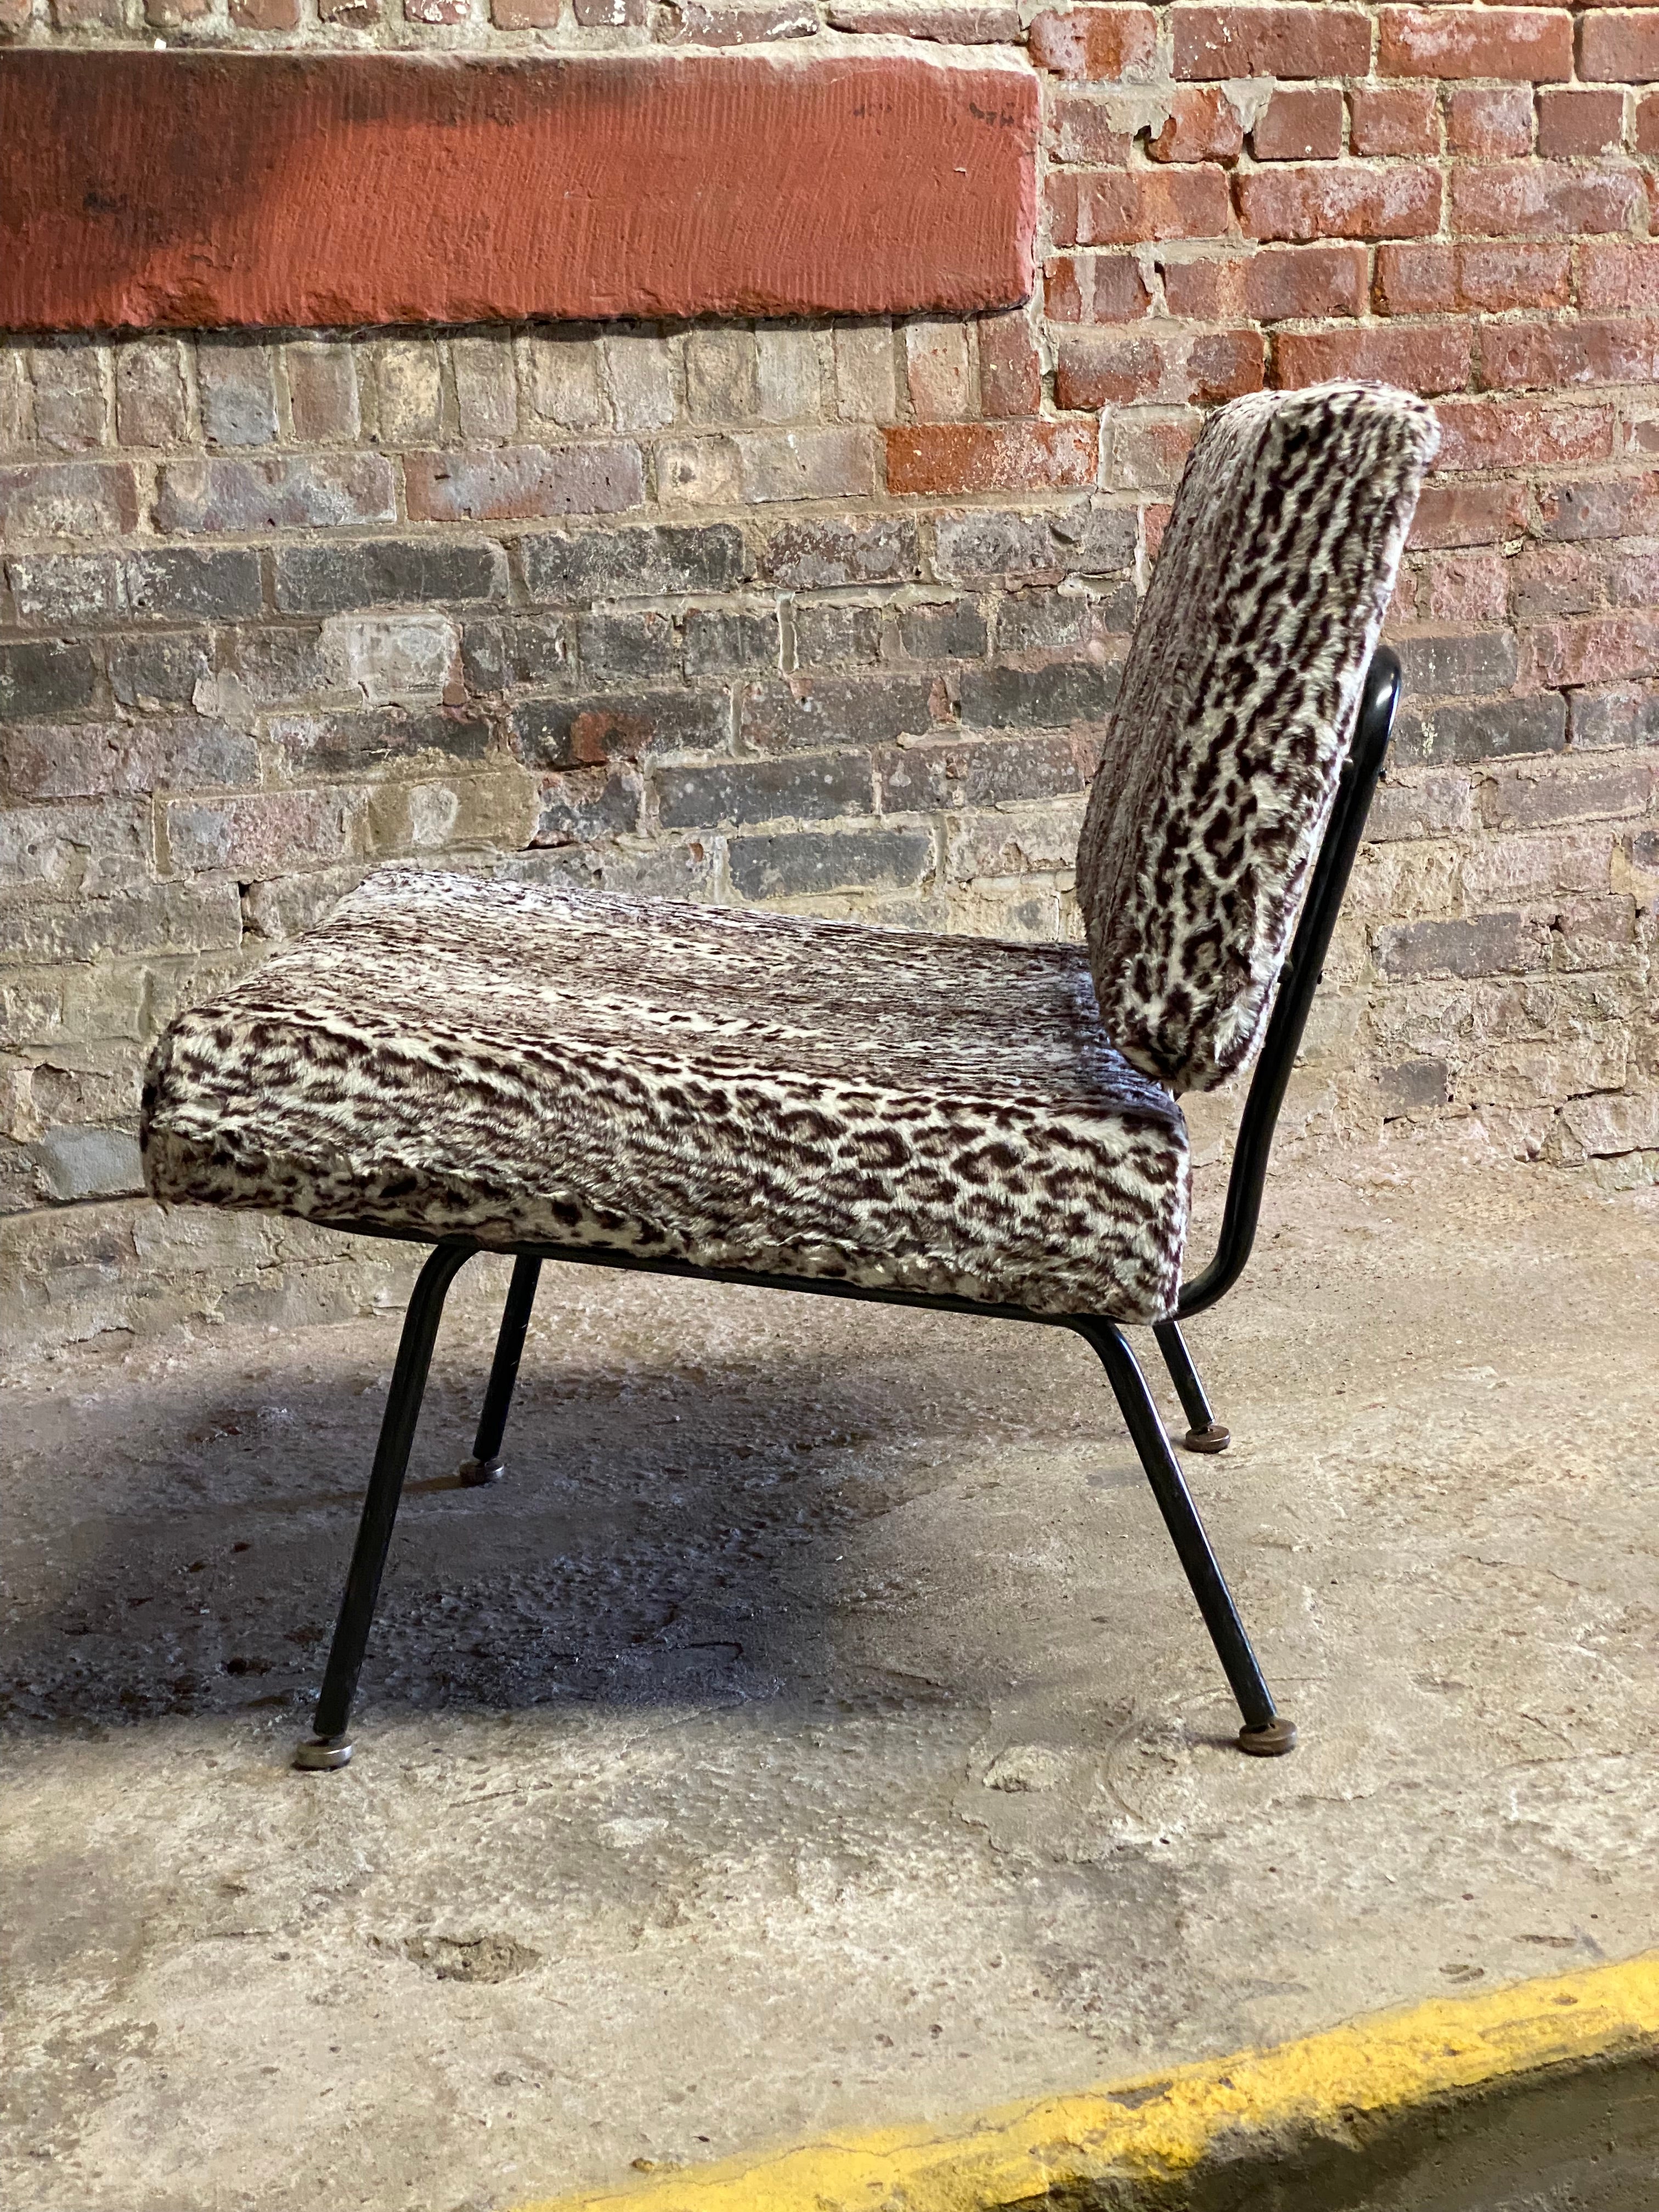 Früher von Florence Knoll (Florence Knoll Bassett) entworfener Sessel Modell 31, ca. 1958-62. Sie entwarf den Stuhl 1954, und er wurde bis 1968 produziert. Schwarz emailliertes Stahlgestell mit gepolsterter Rückenlehne und Sitzfläche. Hervorragend